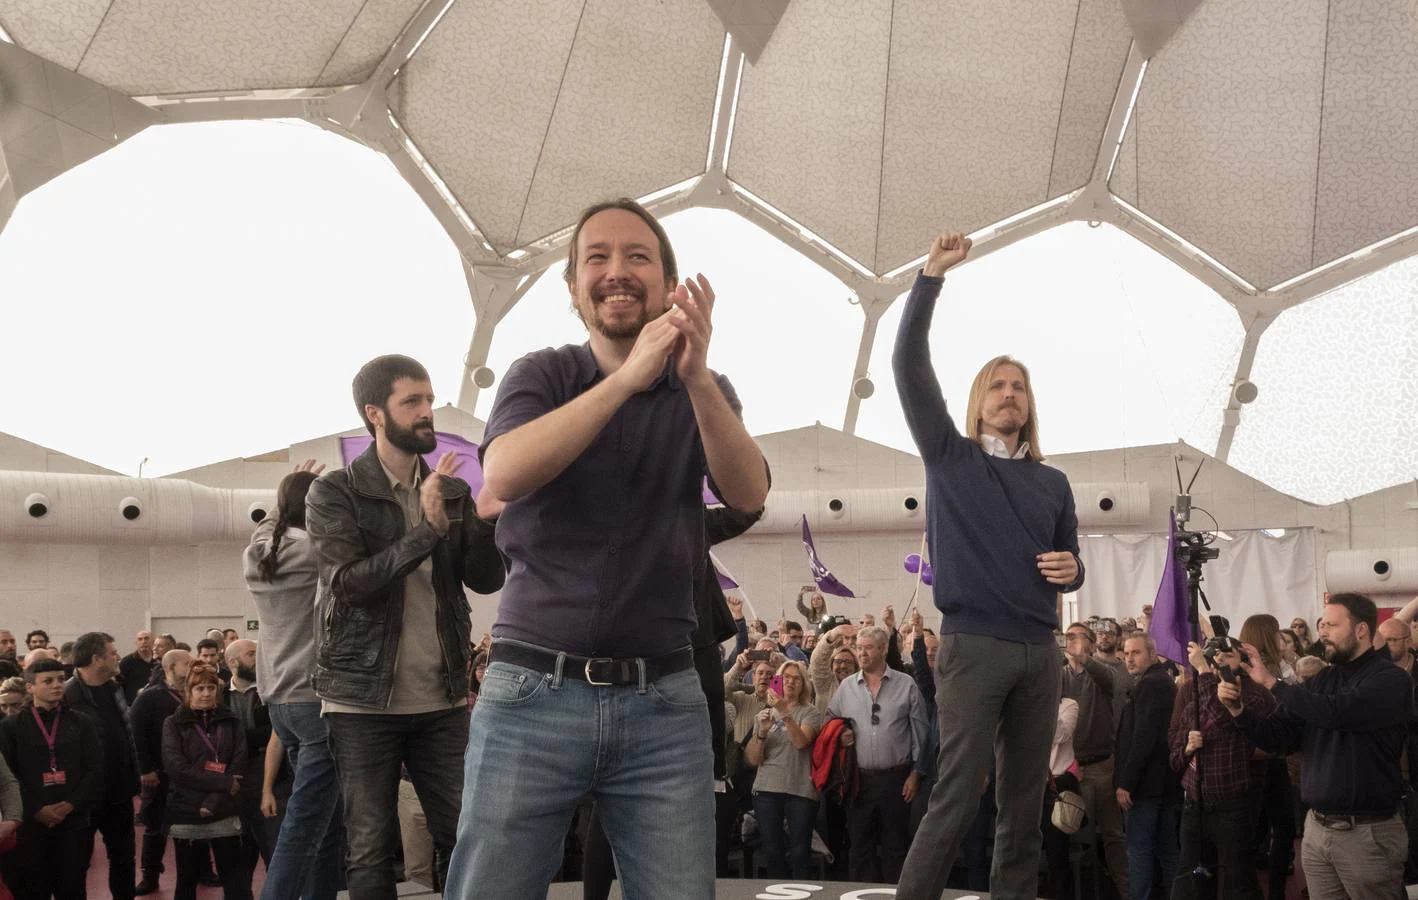 El candidato de Unidas Podemos al Gobierno ha llamado por segundo día consecutivo a frenar en las urnas a la formación ultraderechista